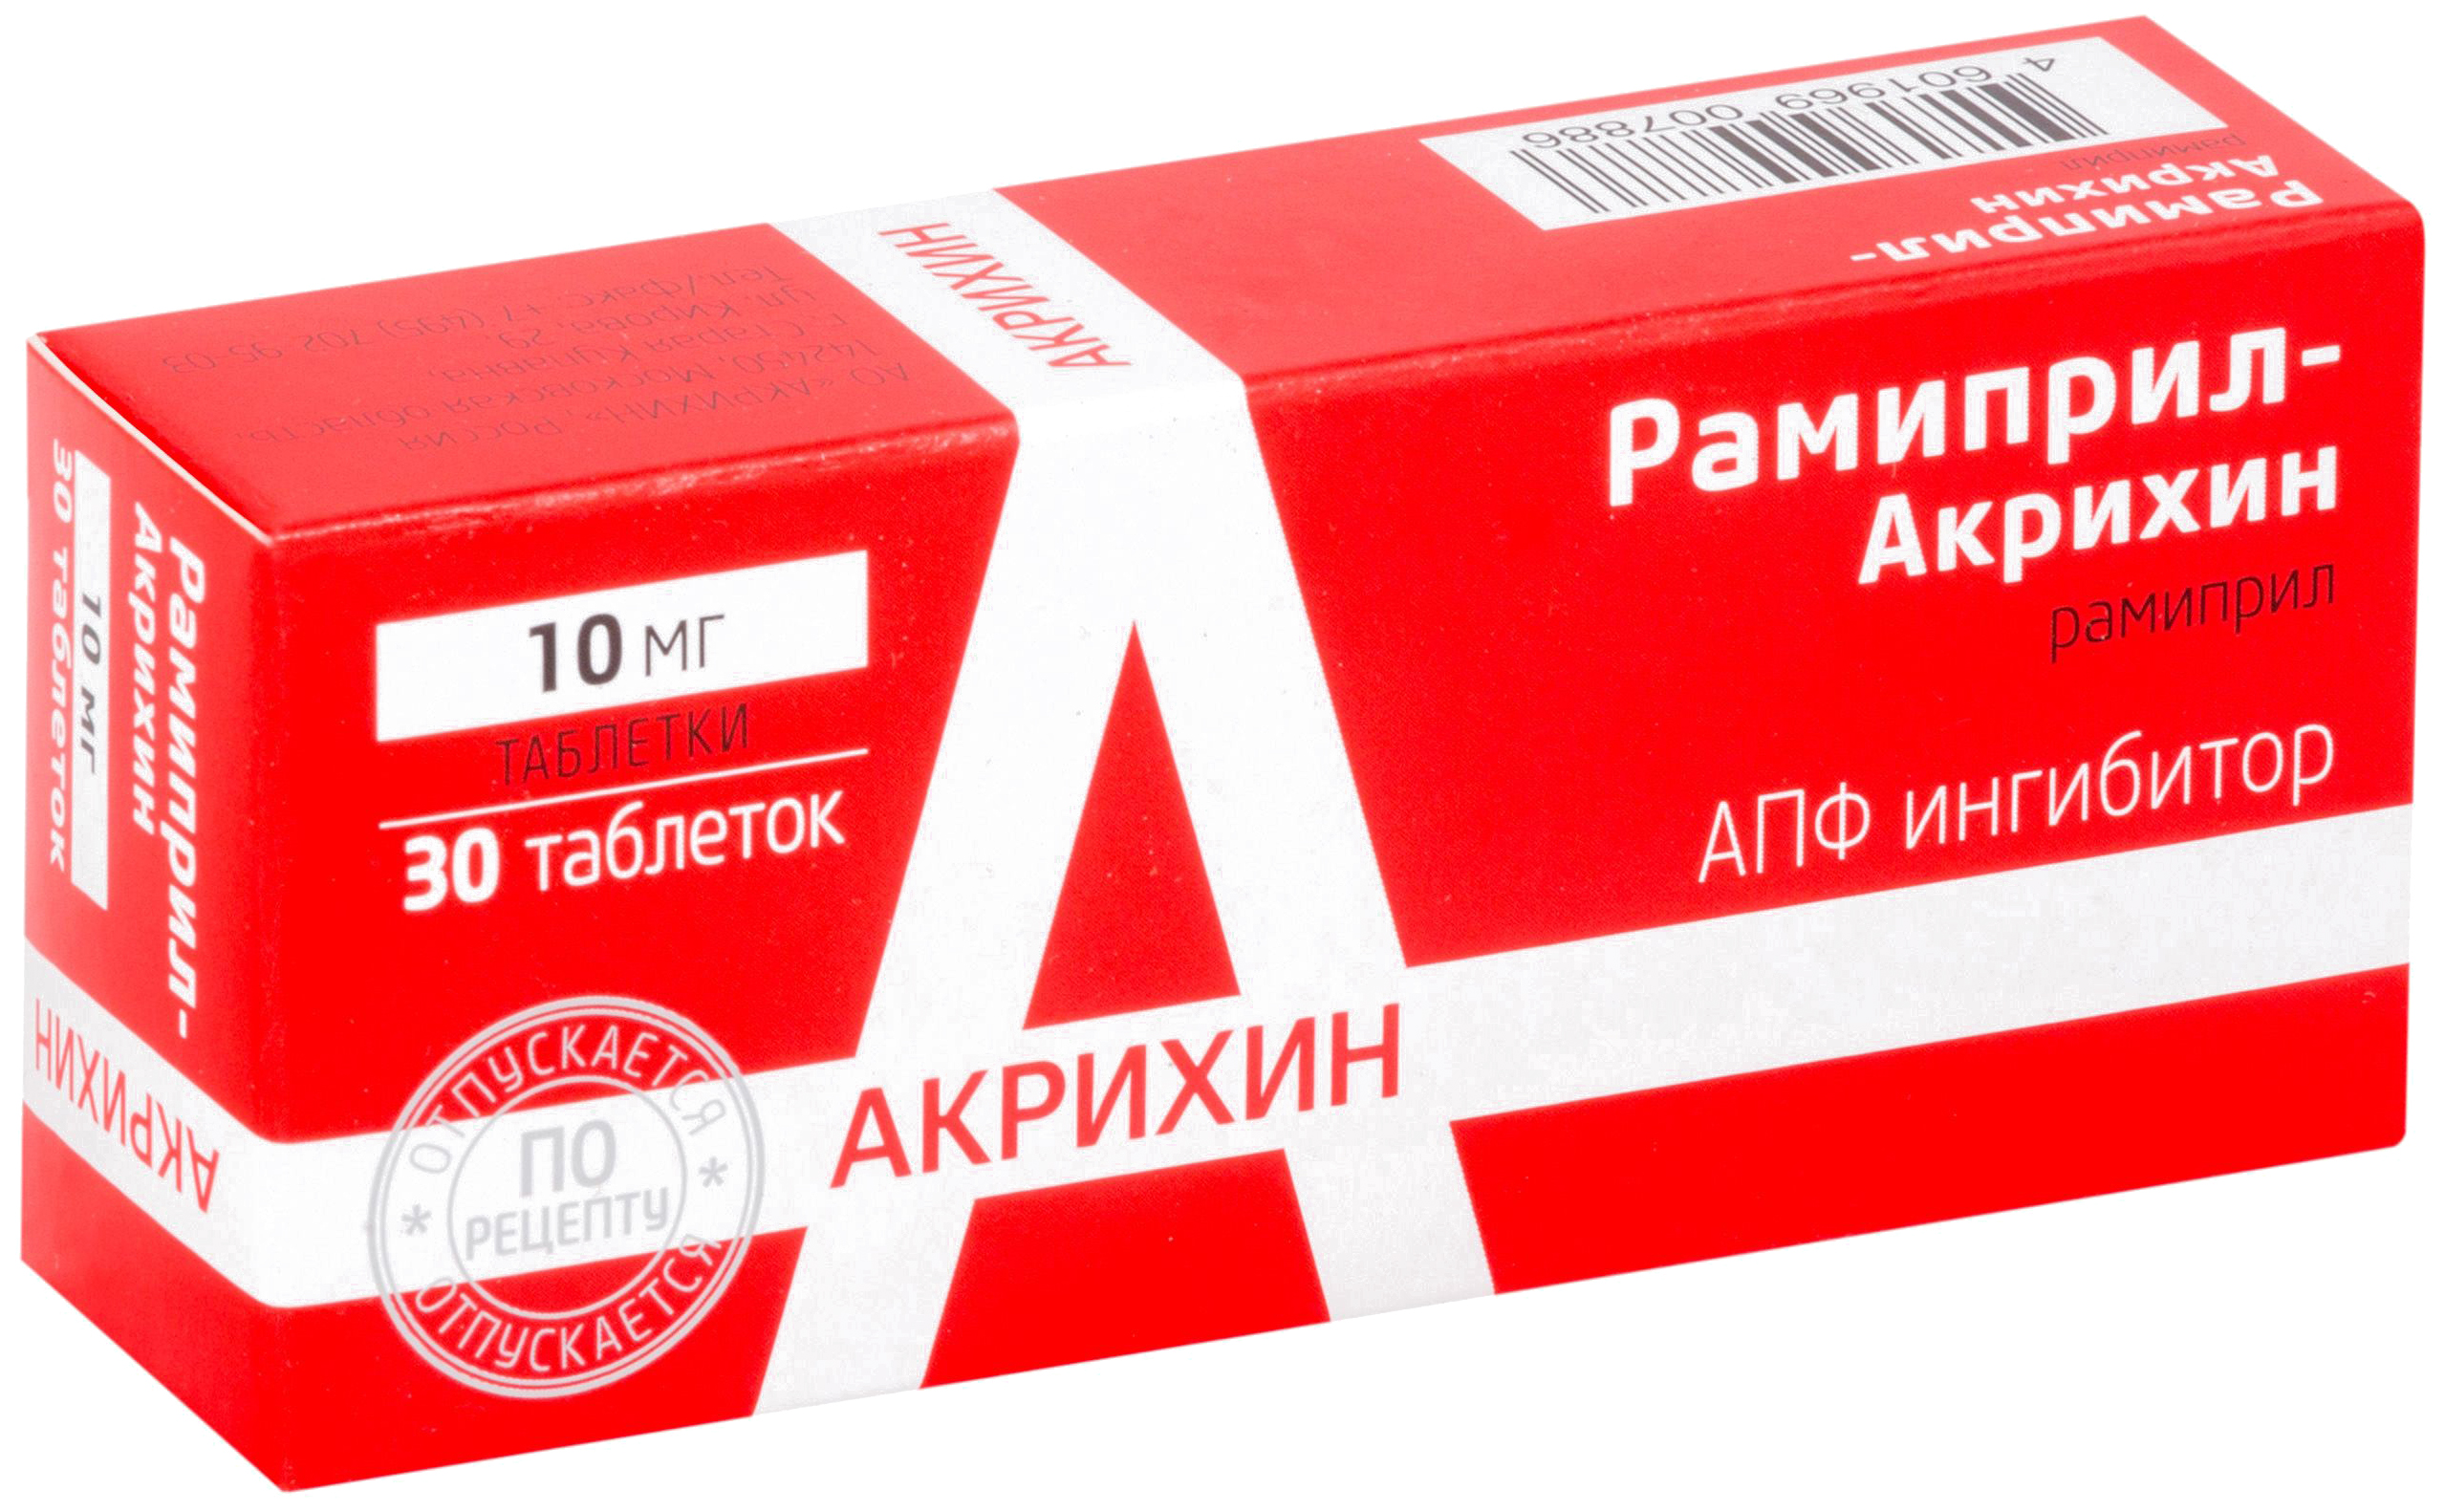 РАМИПРИЛ-АКРИХИН таблетки 10 мг 30 шт. фото